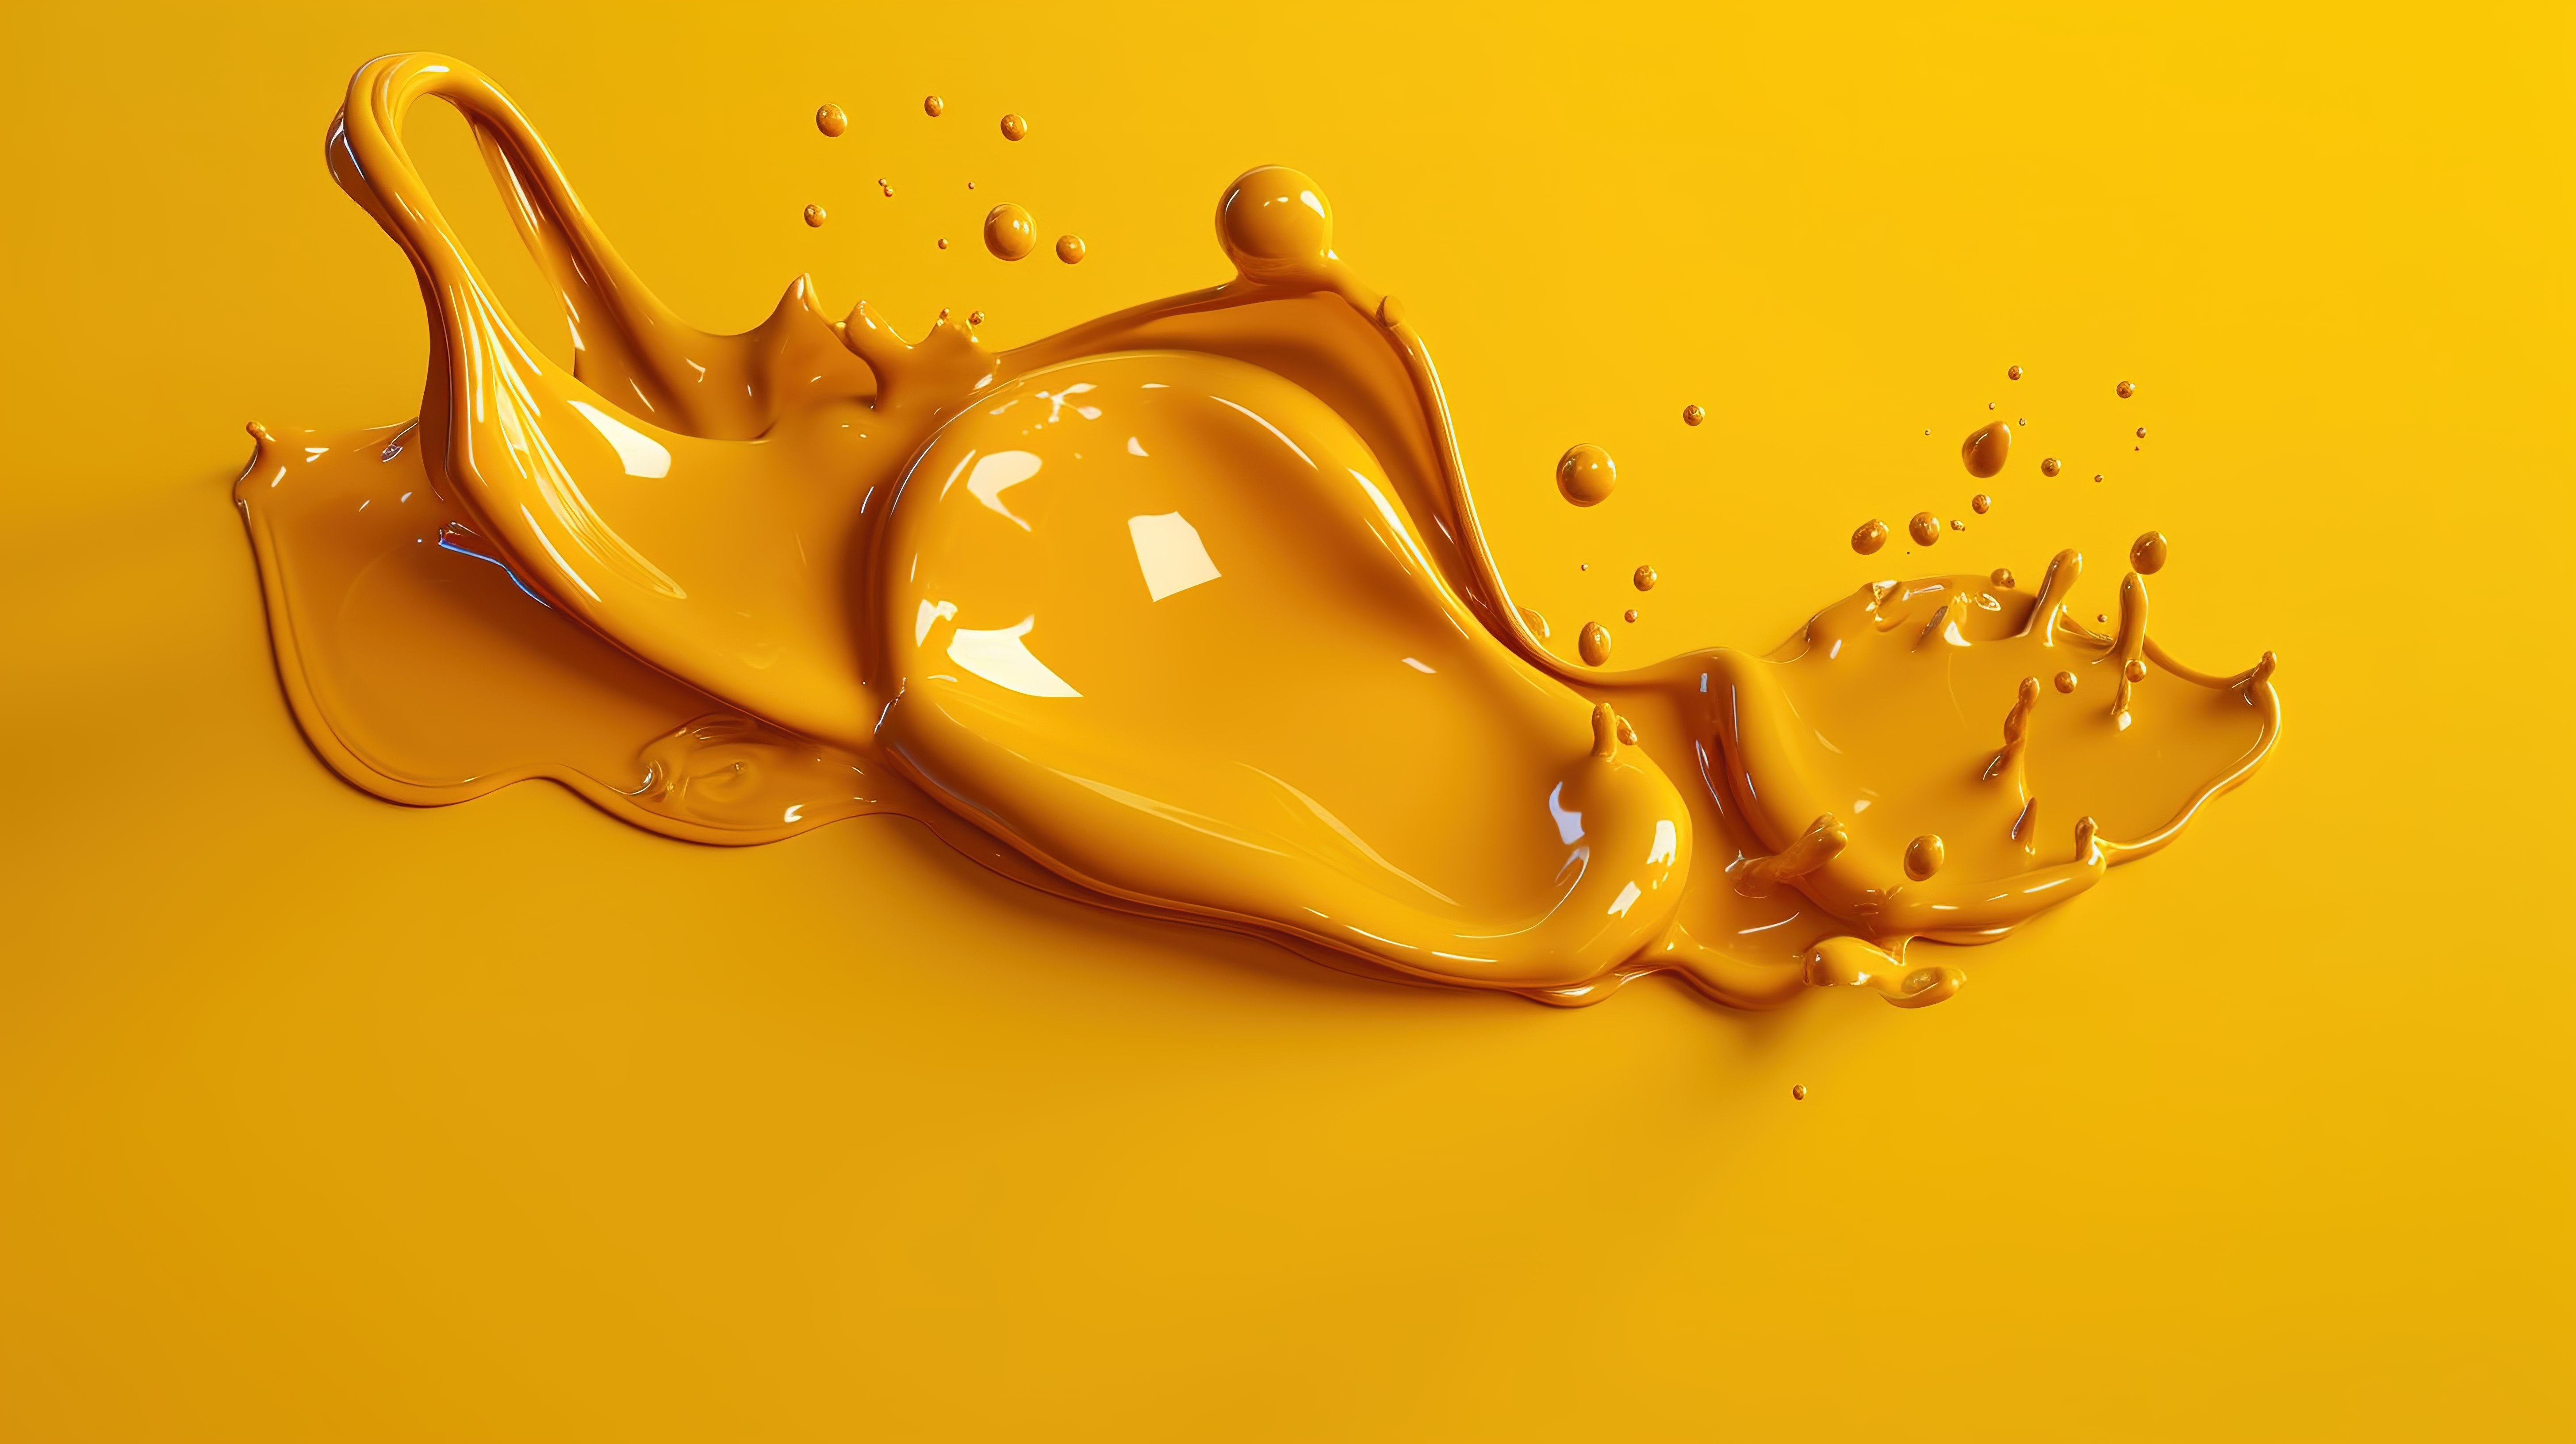 粘糊糊的焦糖滴在充满活力的黄色背景 3d 渲染上图片